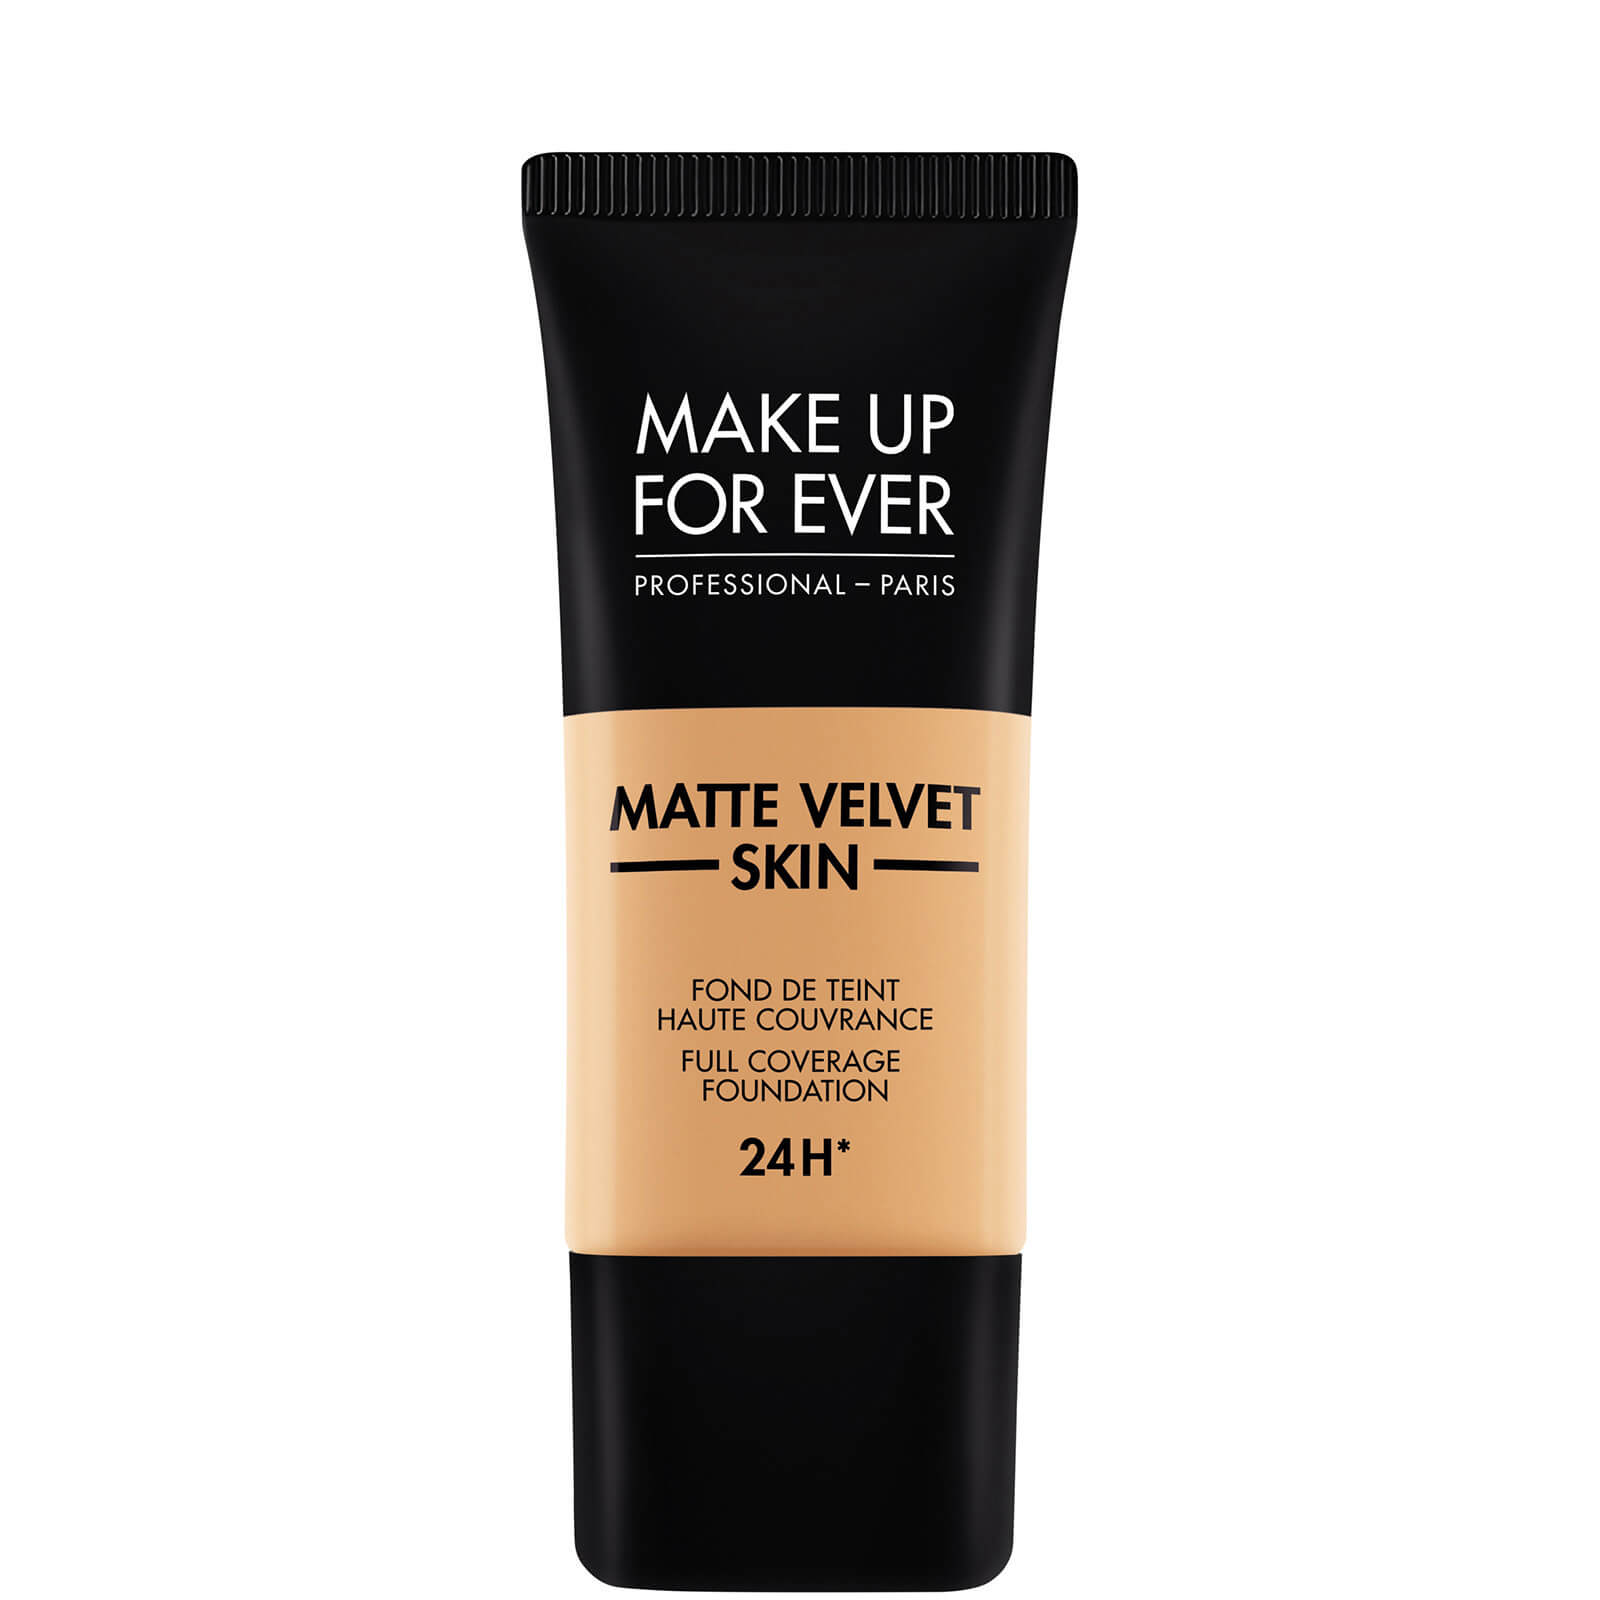 MAKE UP FOR EVER matte Velvet Skin Foundation 30ml (Various Shades) - - 375 Golden sand